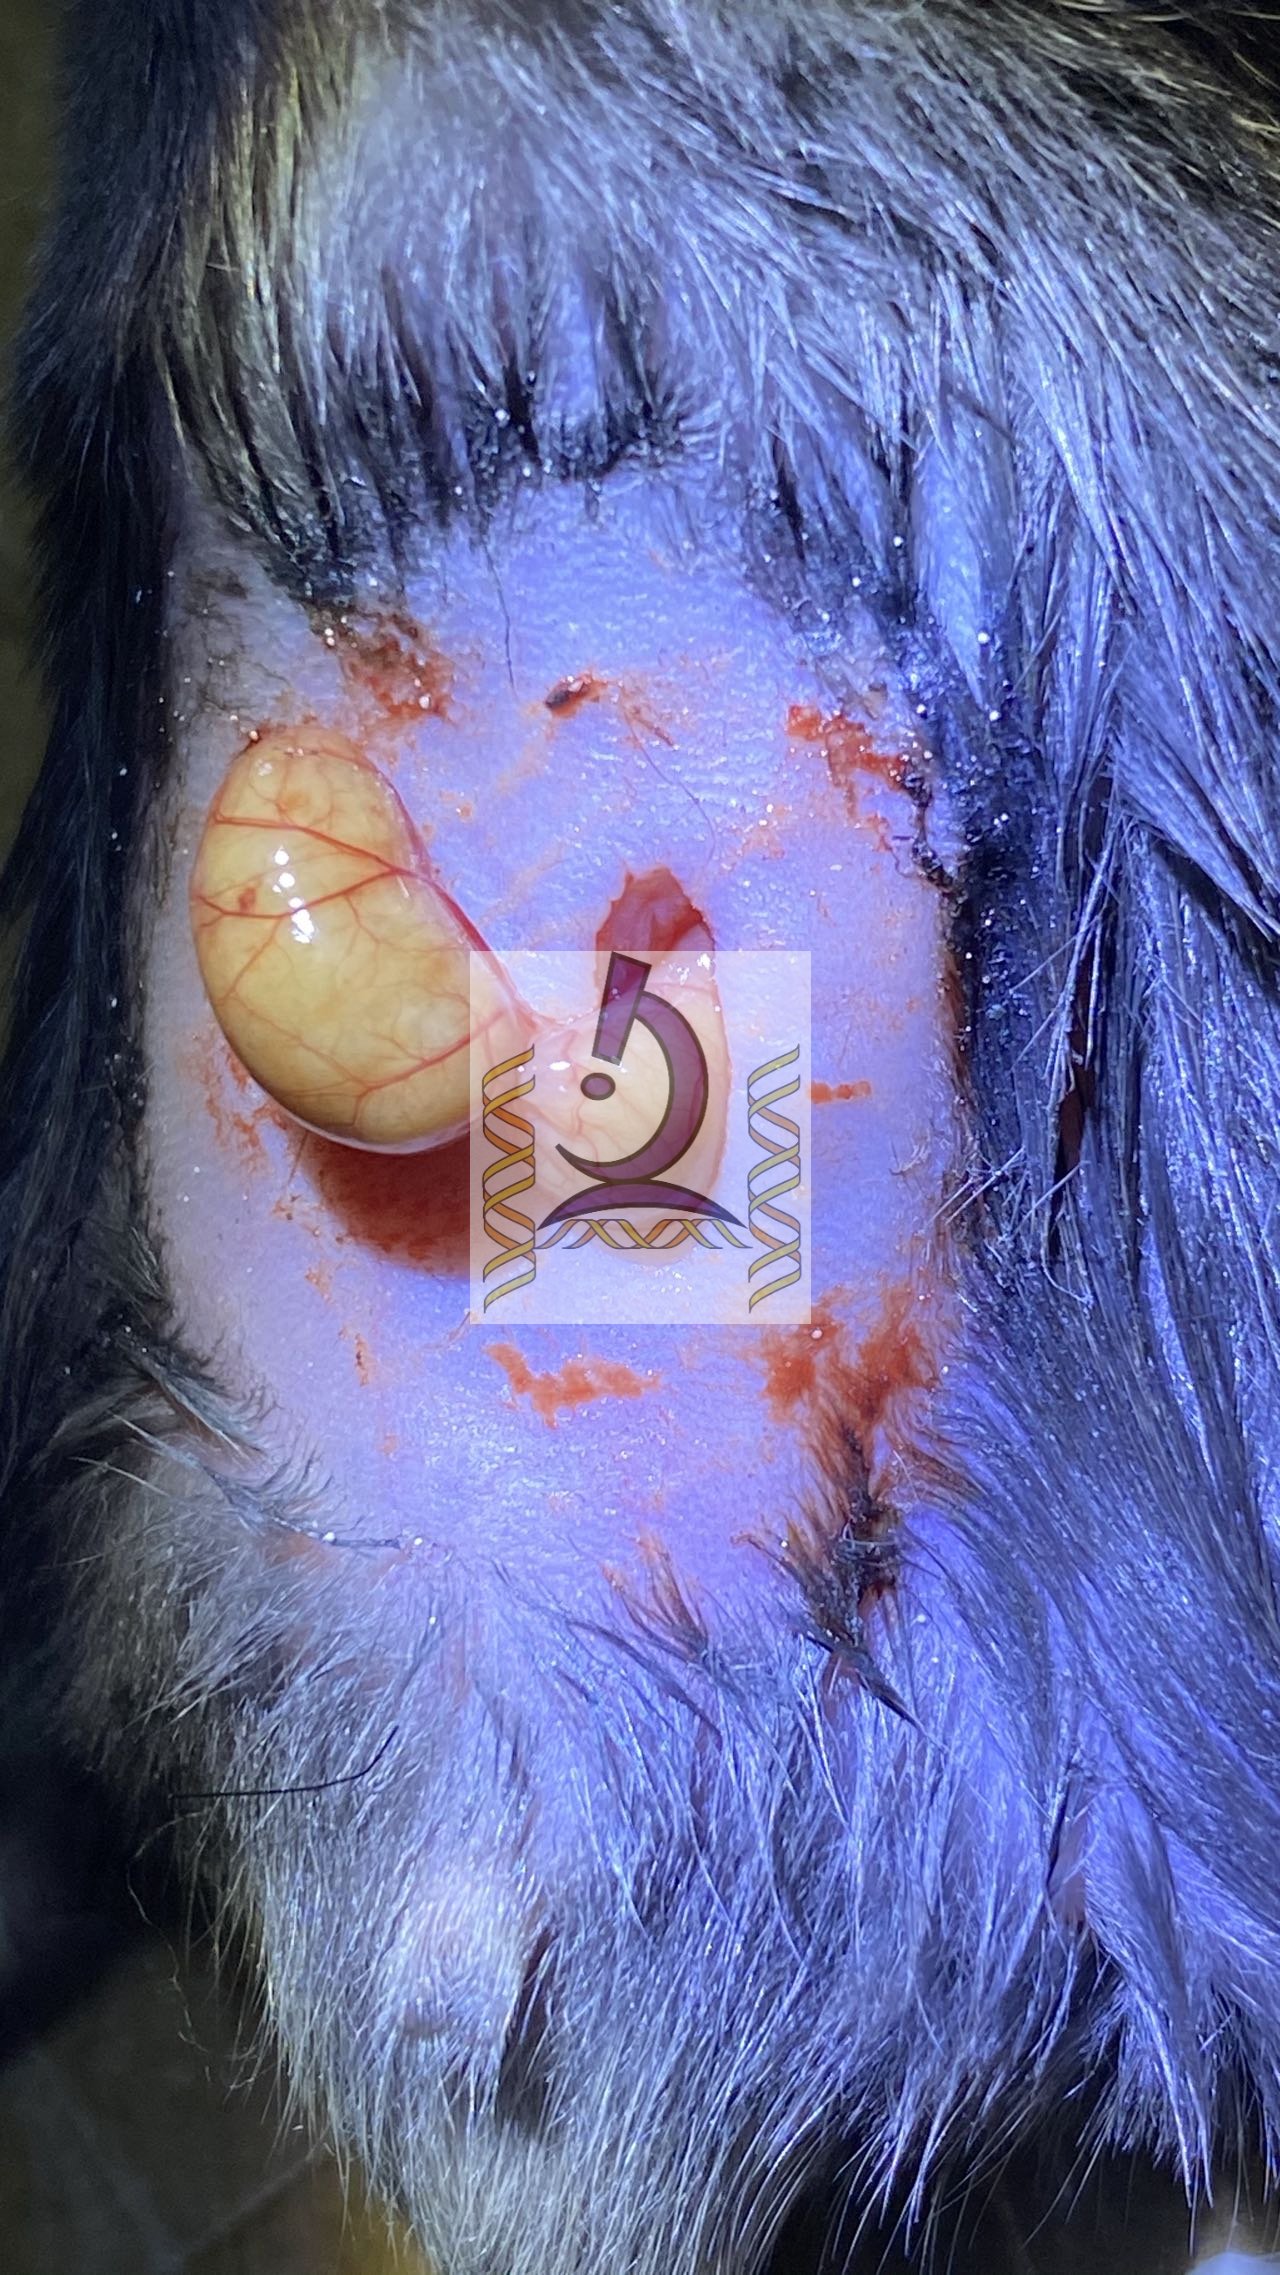 小鼠CLP盲腸穿孔致膿毒血癥模型